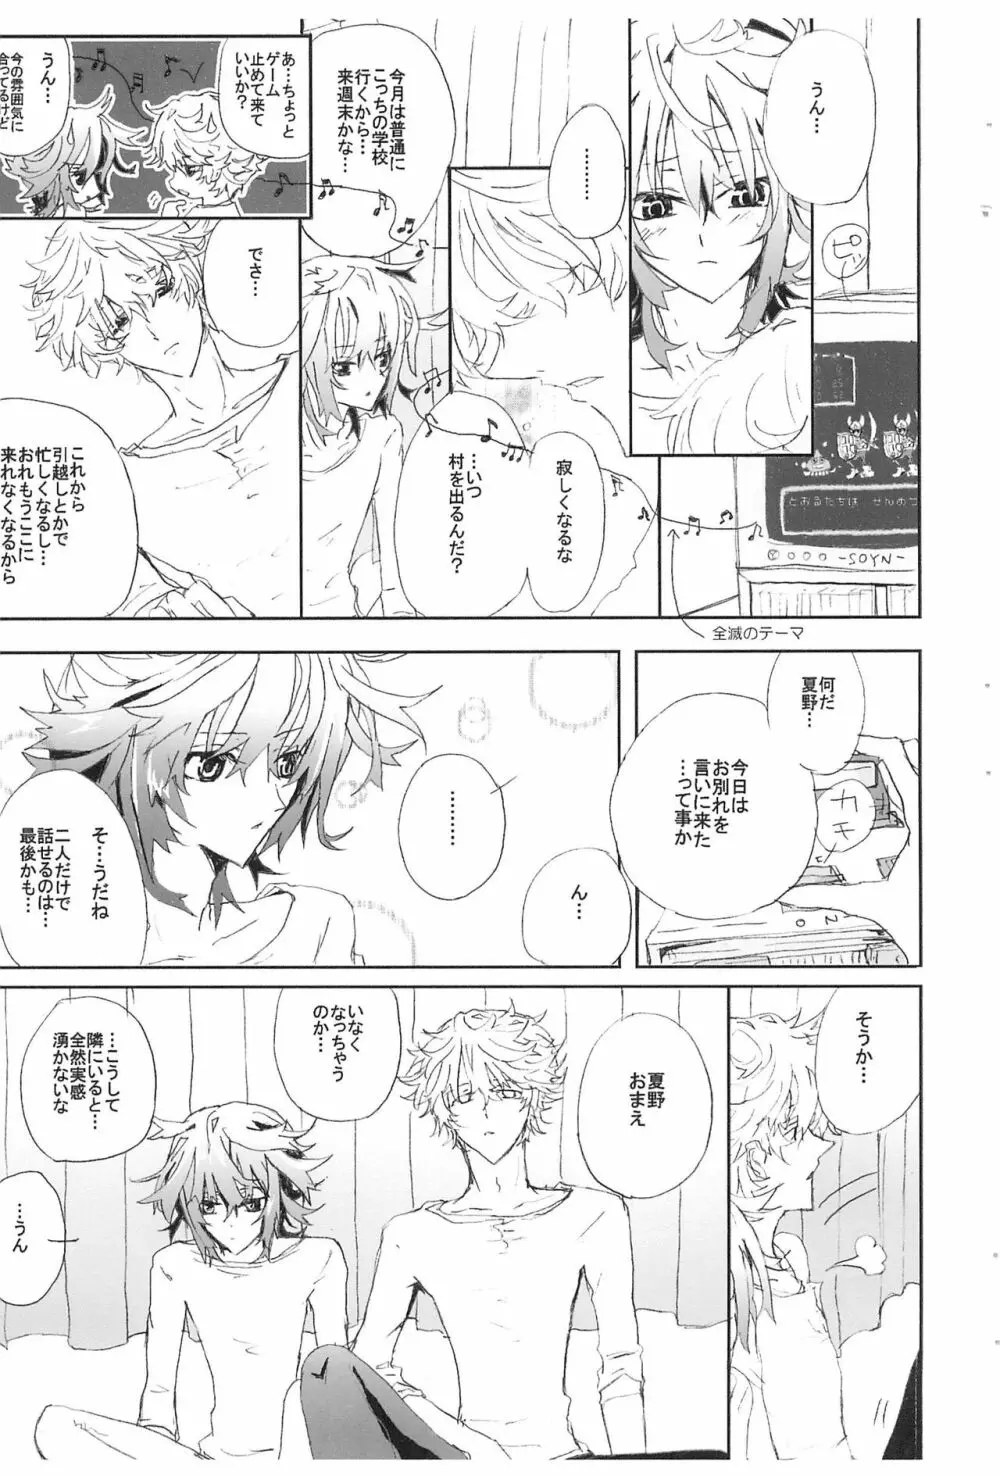 Shiki-hon 6 - page9